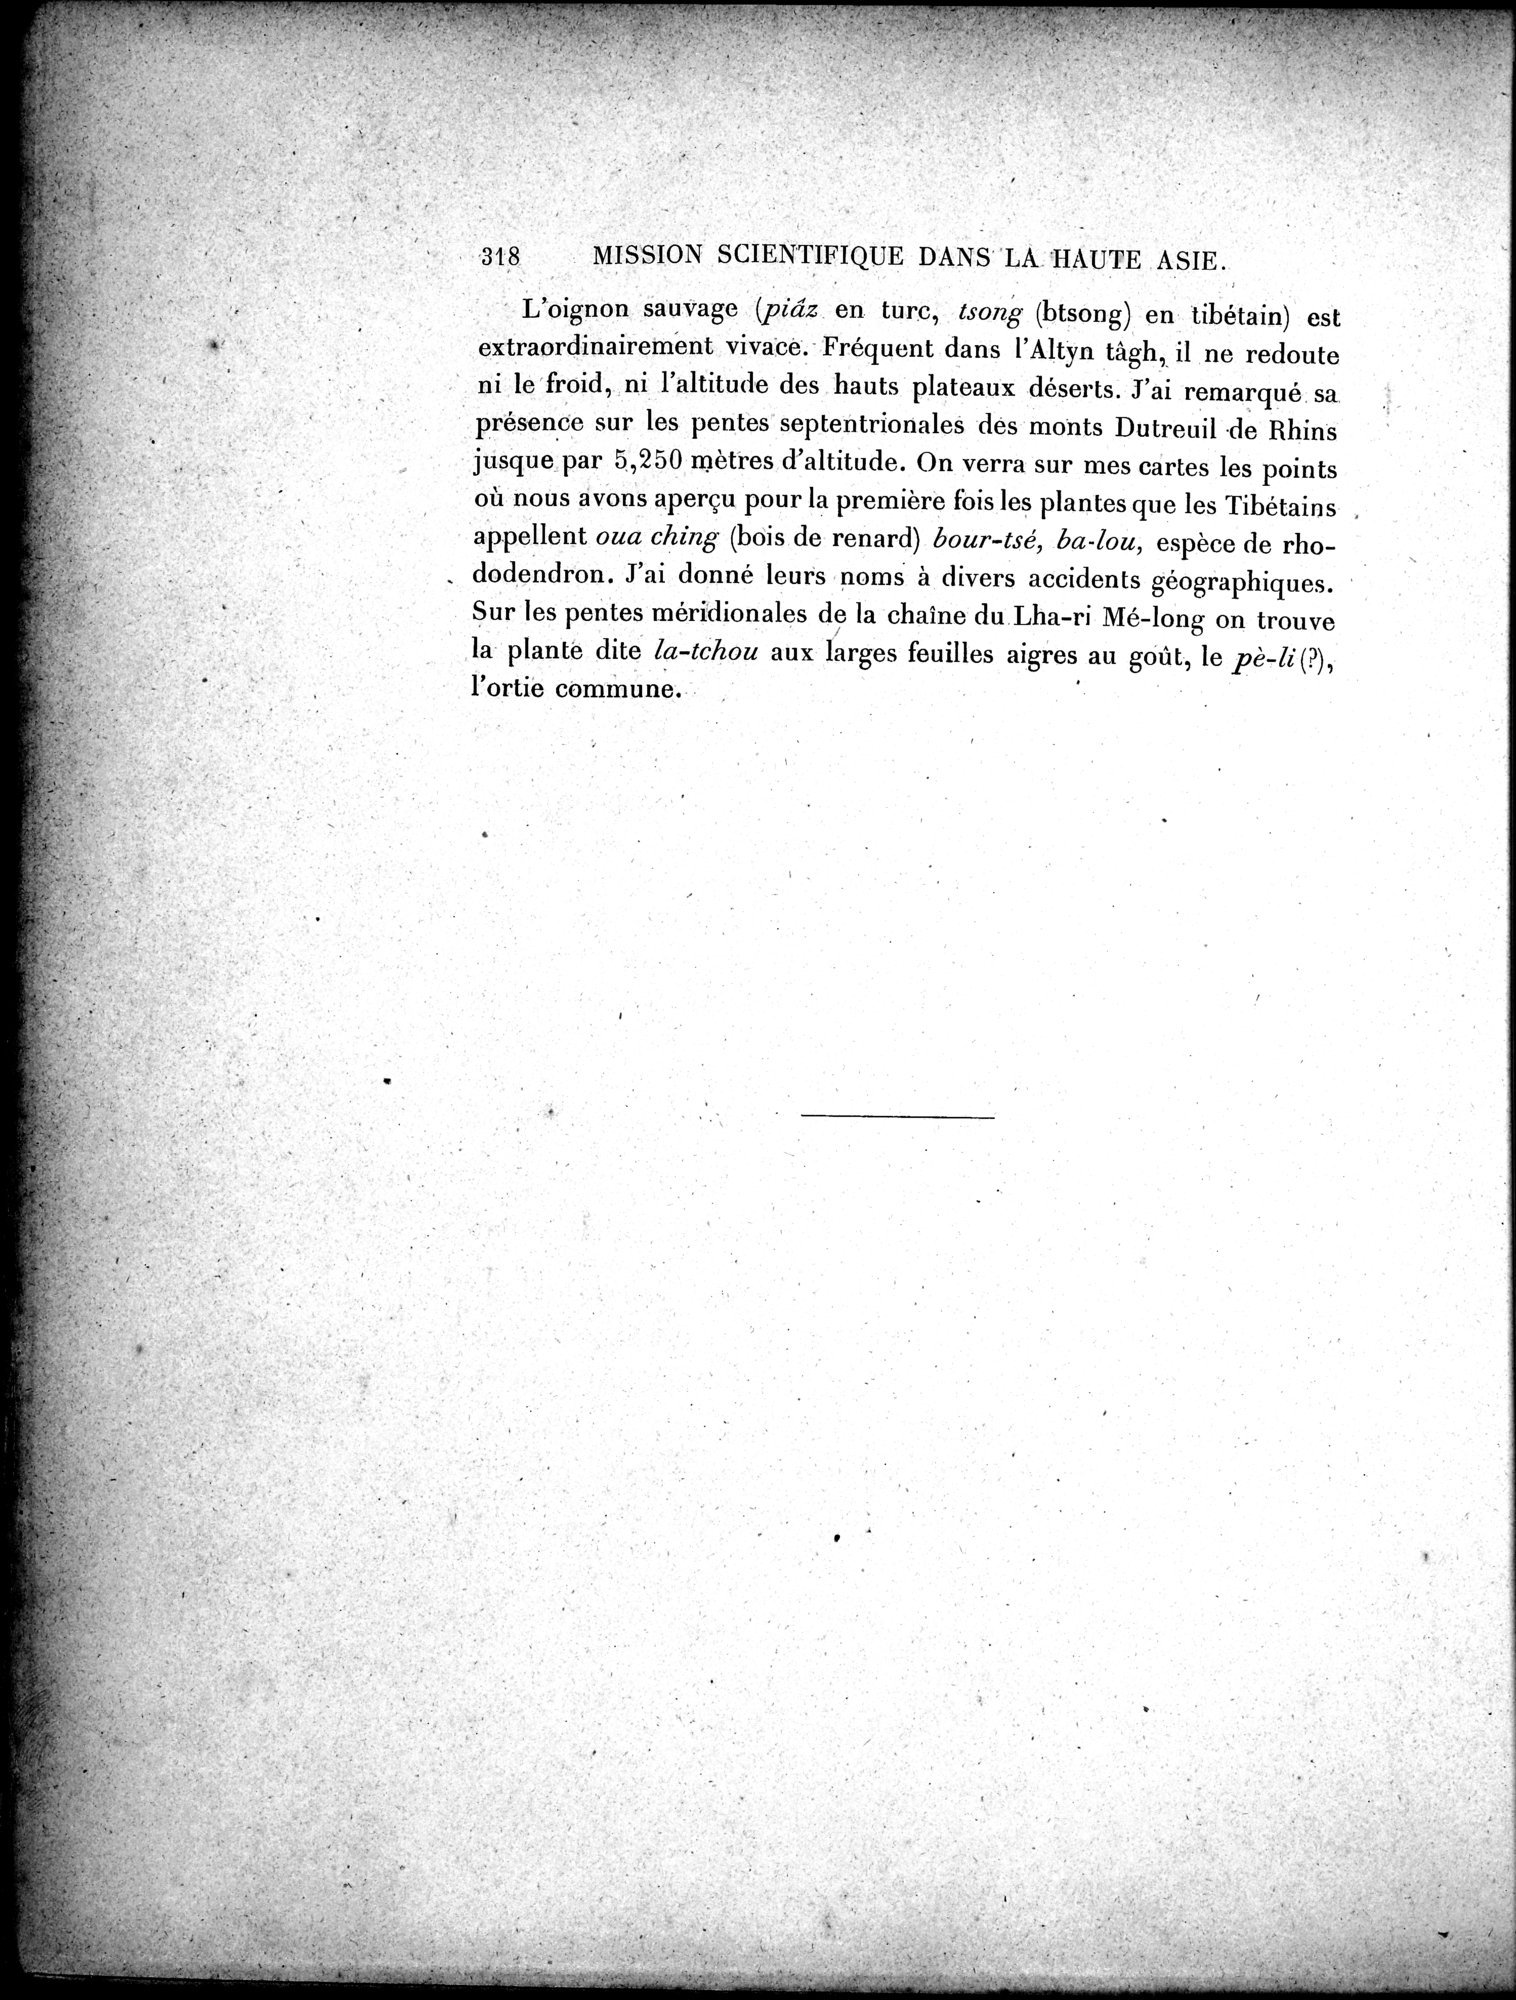 Mission Scientifique dans la Haute Asie 1890-1895 : vol.3 / Page 338 (Grayscale High Resolution Image)